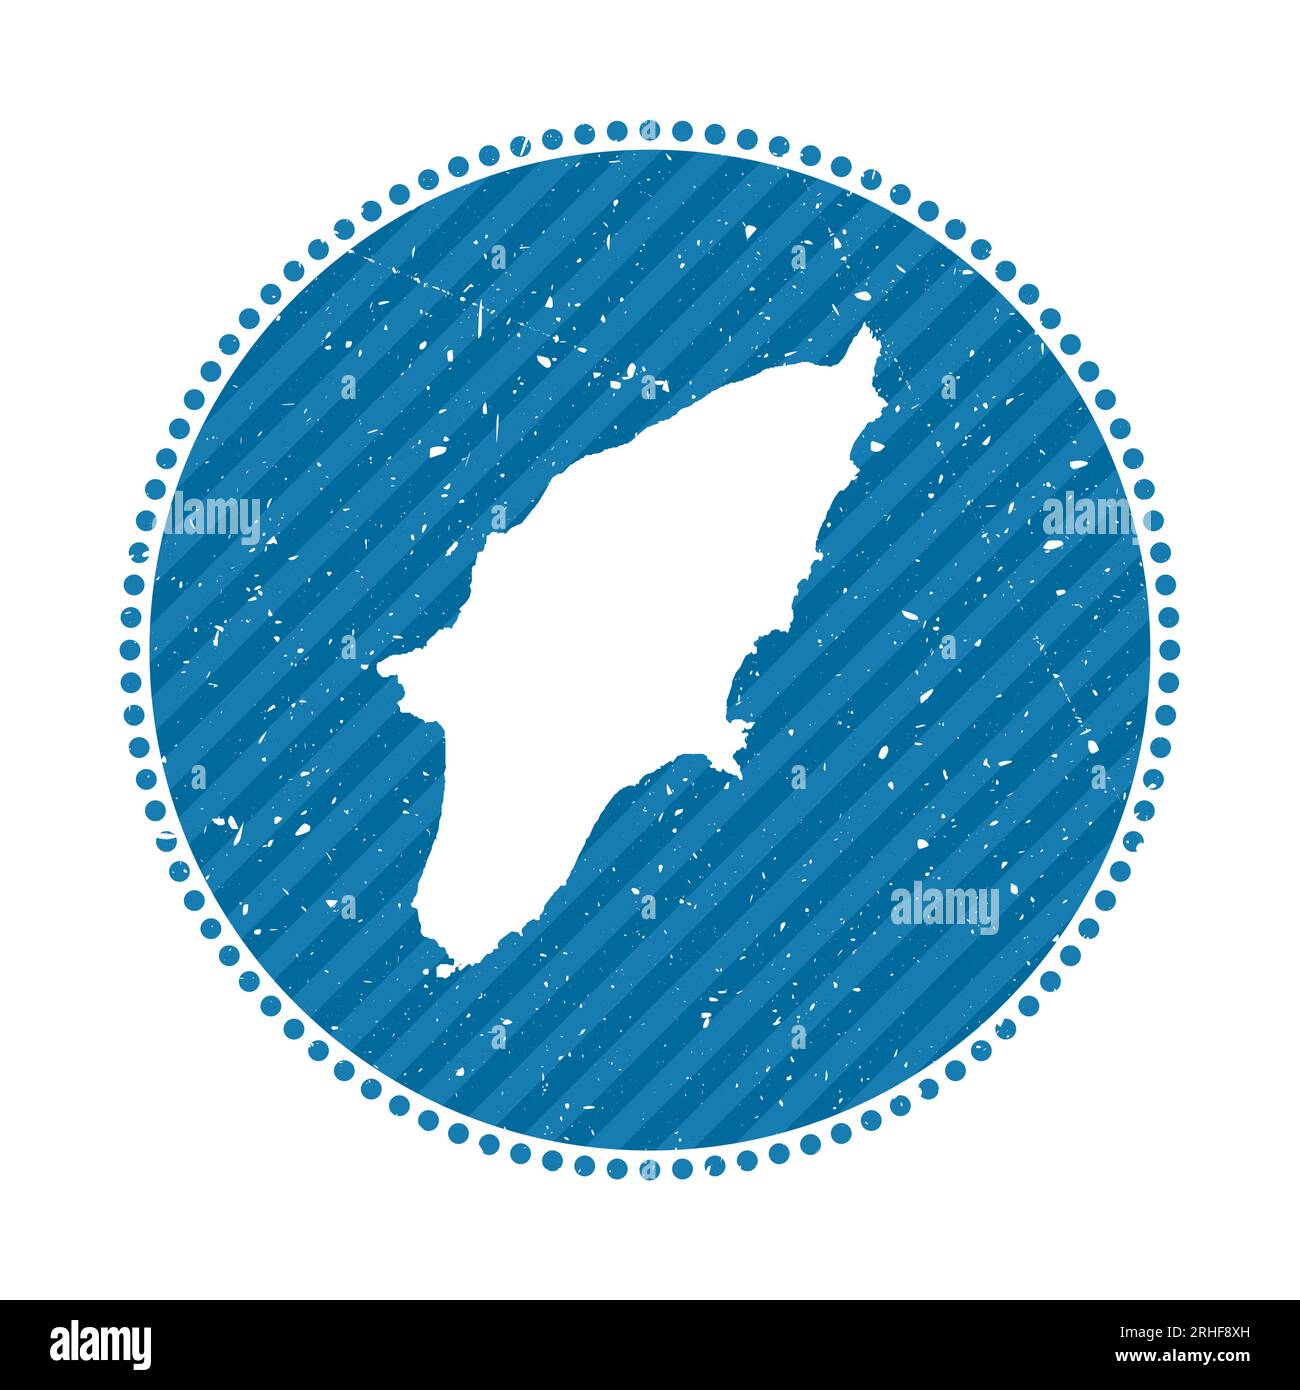 Adesivo da viaggio rétro a righe Rodi. Badge con mappa dell'isola, illustrazione vettoriale. Può essere utilizzato come insegna, logotipo, etichetta, adesivo o badge del Illustrazione Vettoriale